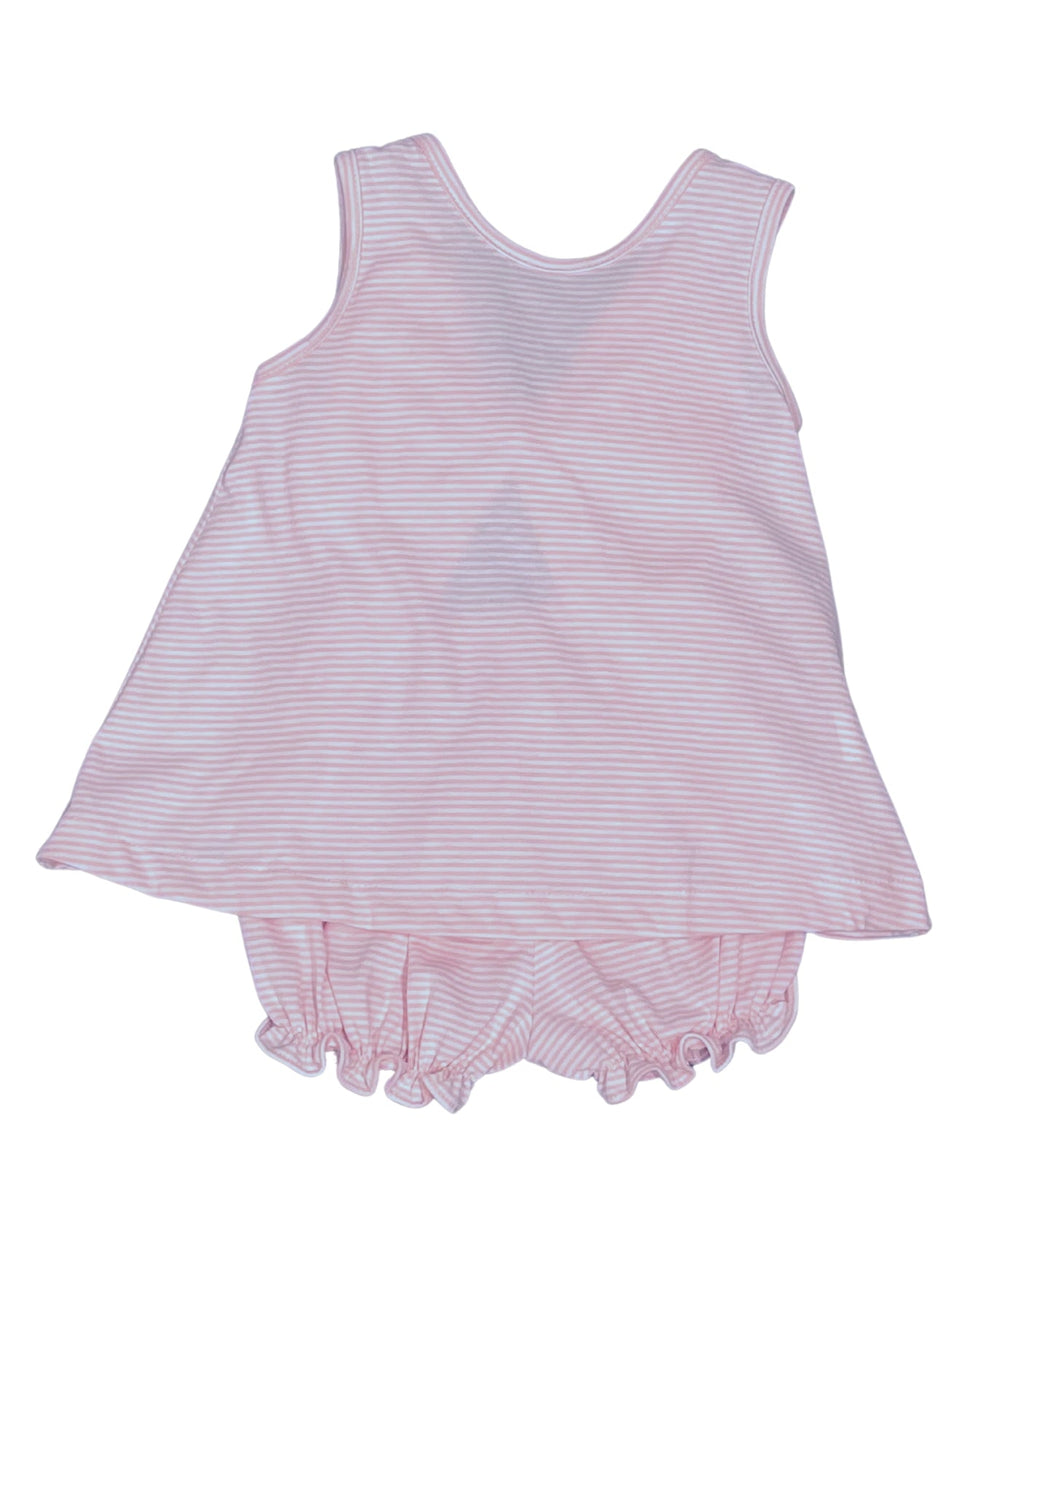 Lottie Knit Pink Stripe Bloomer/Short Set